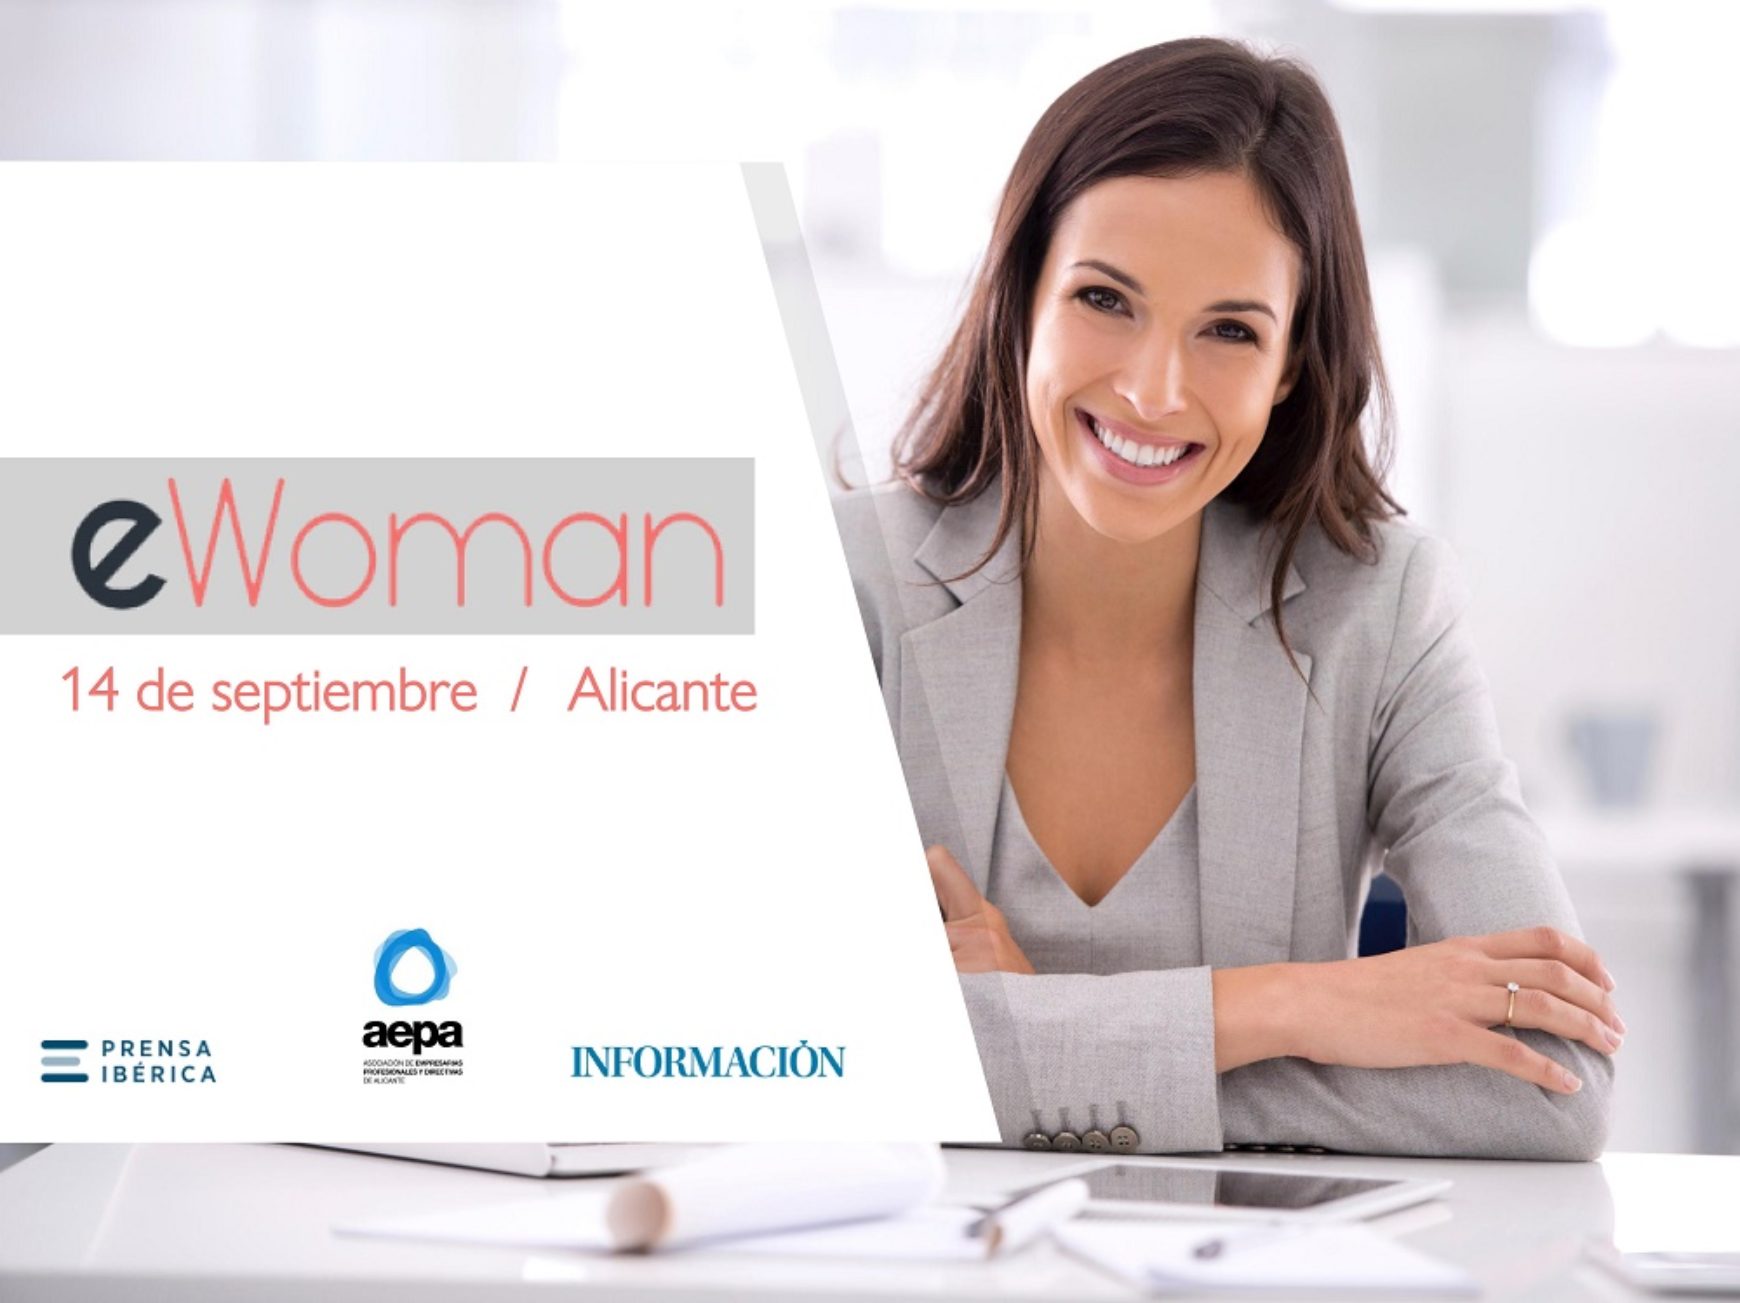 E-WOMAN: Mujeres líderes en el entorno digital y tecnológico.